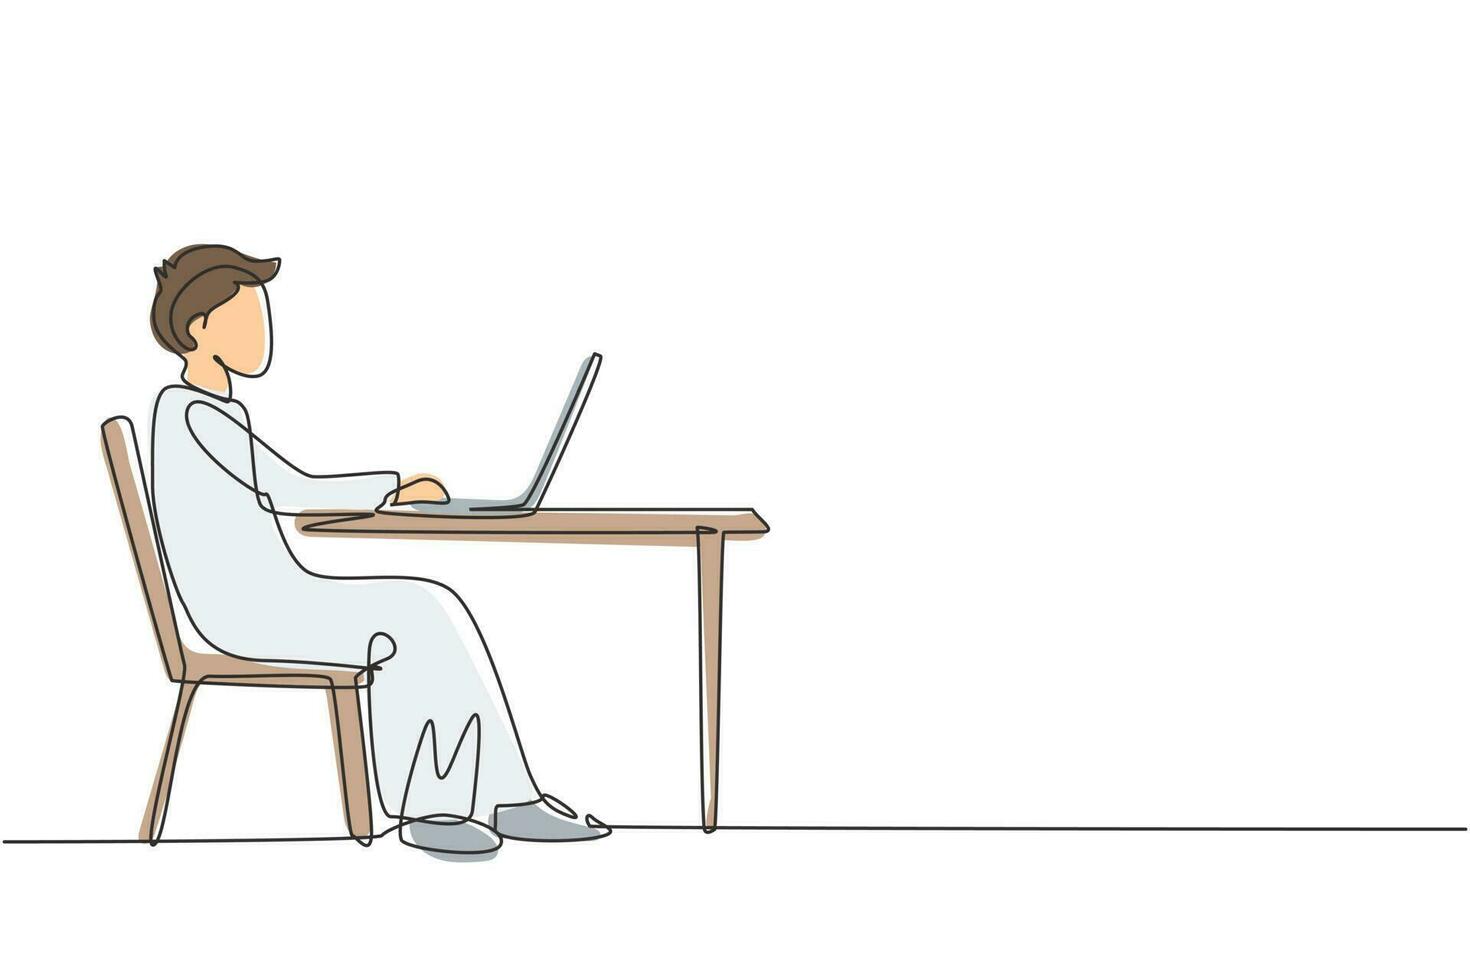 enkele een lijntekening Arabische jongen met laptop zittend op een stoel rond het bureau. afstandsonderwijs, online cursussen en studieconcept. moderne doorlopende lijn tekenen ontwerp grafische vectorillustratie vector